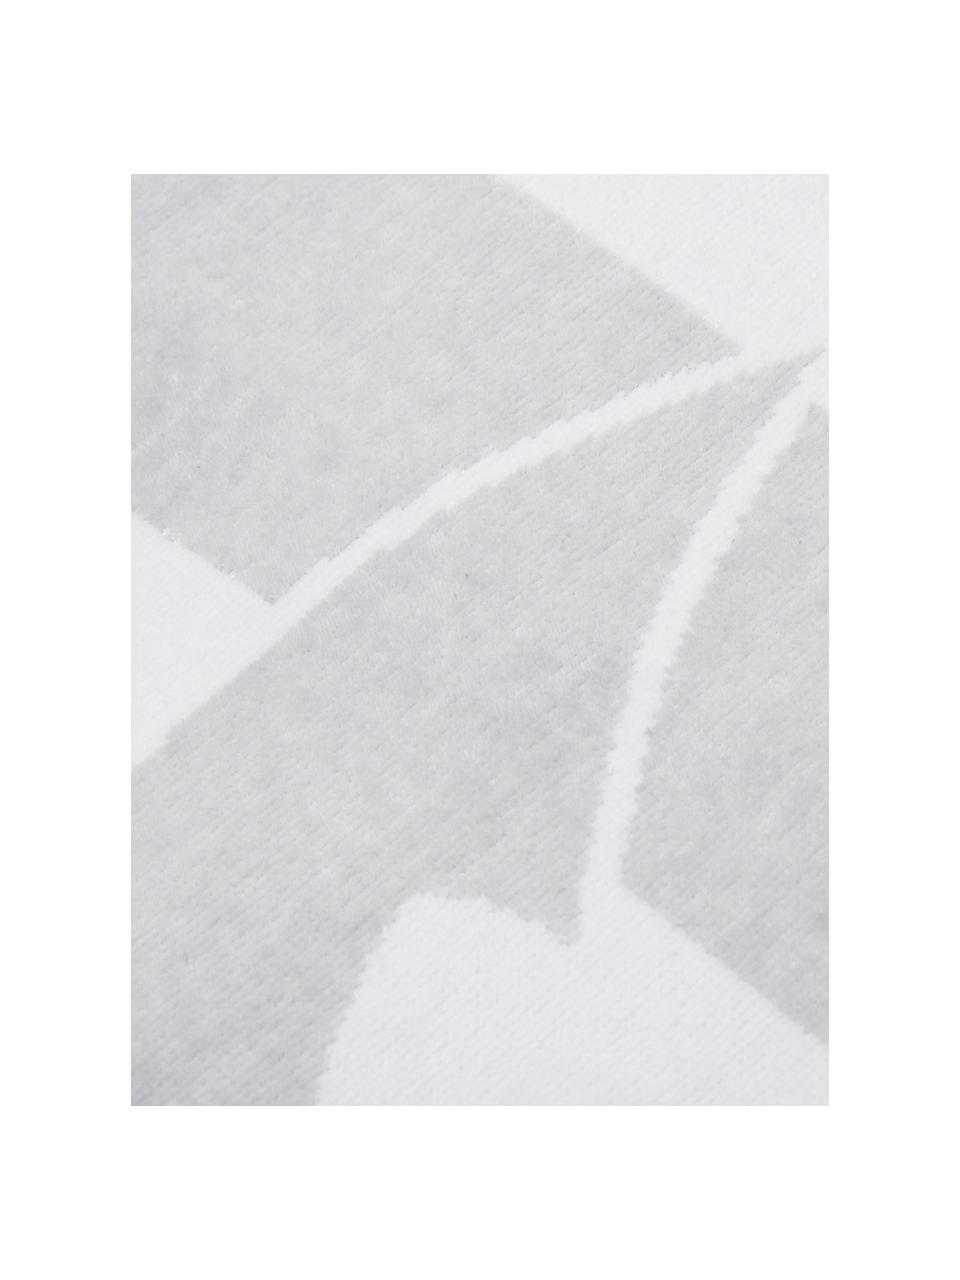 Gestreept strandlaken Anon met ankermotief, Katoen
Lichte kwaliteit 380 g/m², Grijs, wit, 80 x 160 cm